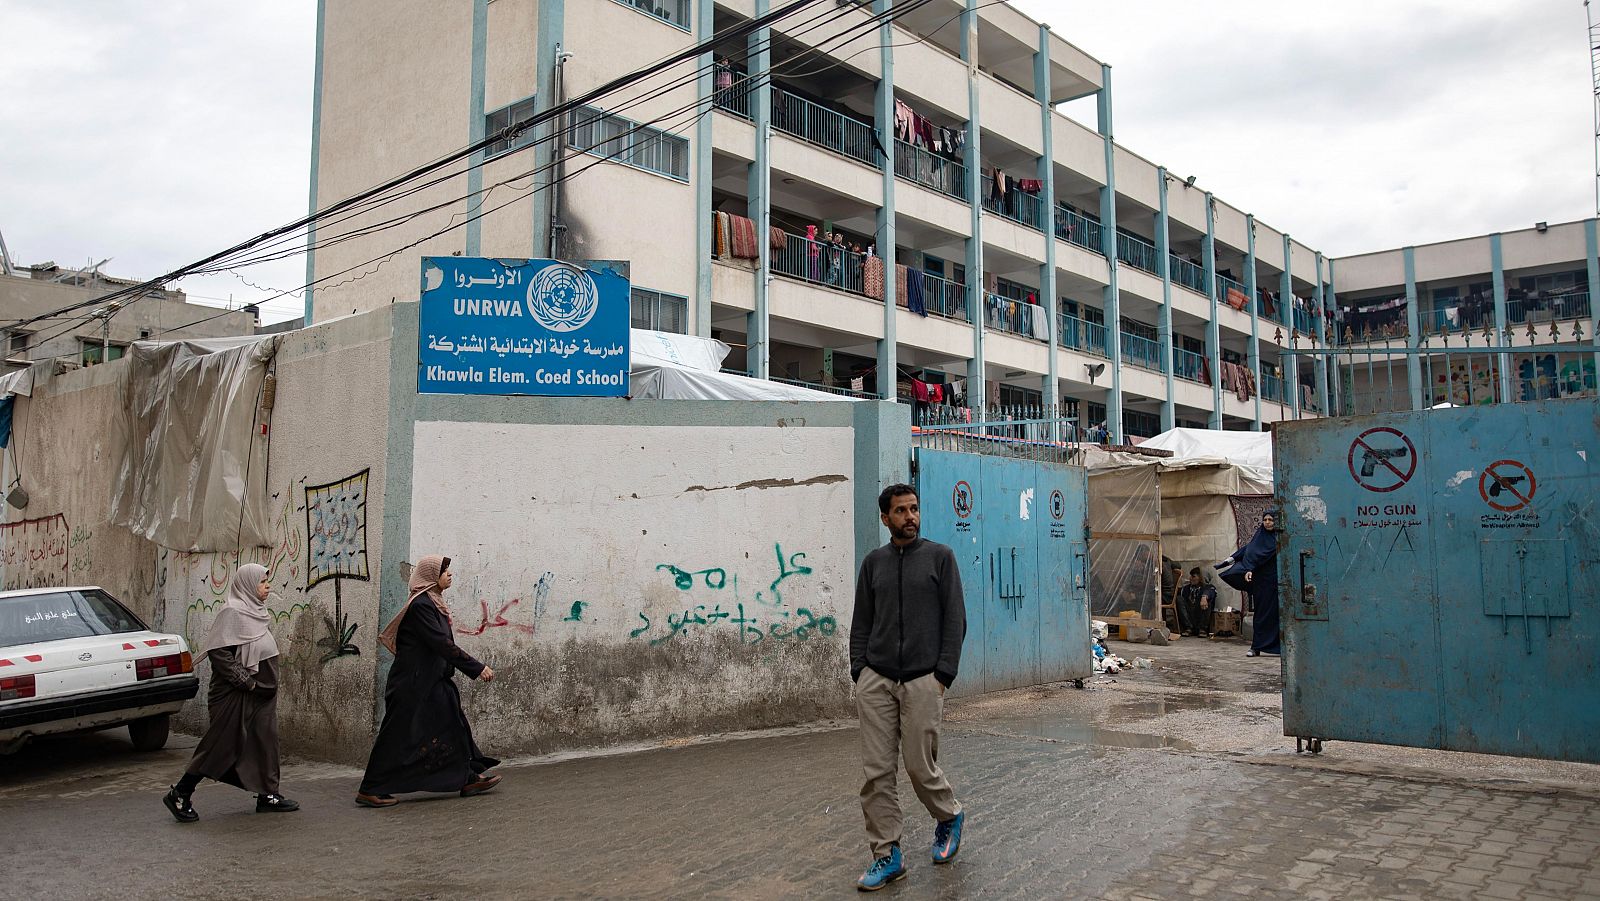 Guerra Israel-Hamás. Raquel Martí, portavoz de UNRWA: "Es absolutamente irresponsable cortar la ayuda"